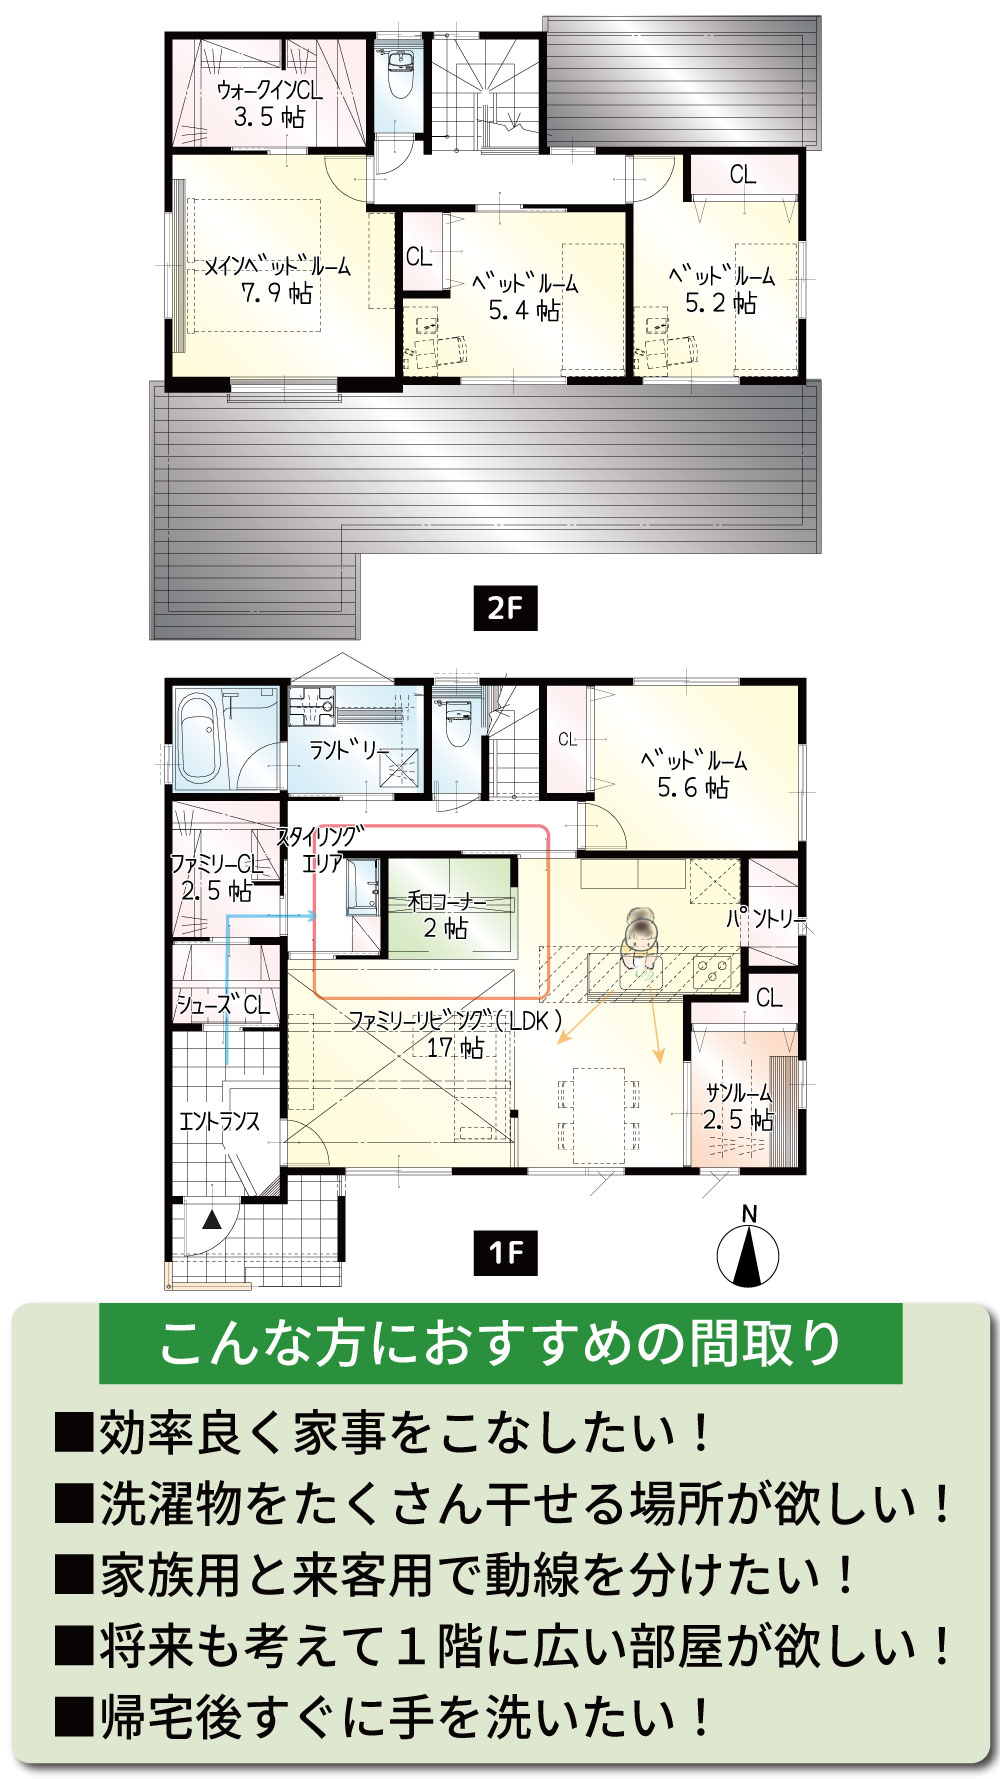 間取図<br> #駐車3台可能 #回遊動線 #各部屋に収納 #キッチン横に畳 #1階5.6帖の洋室